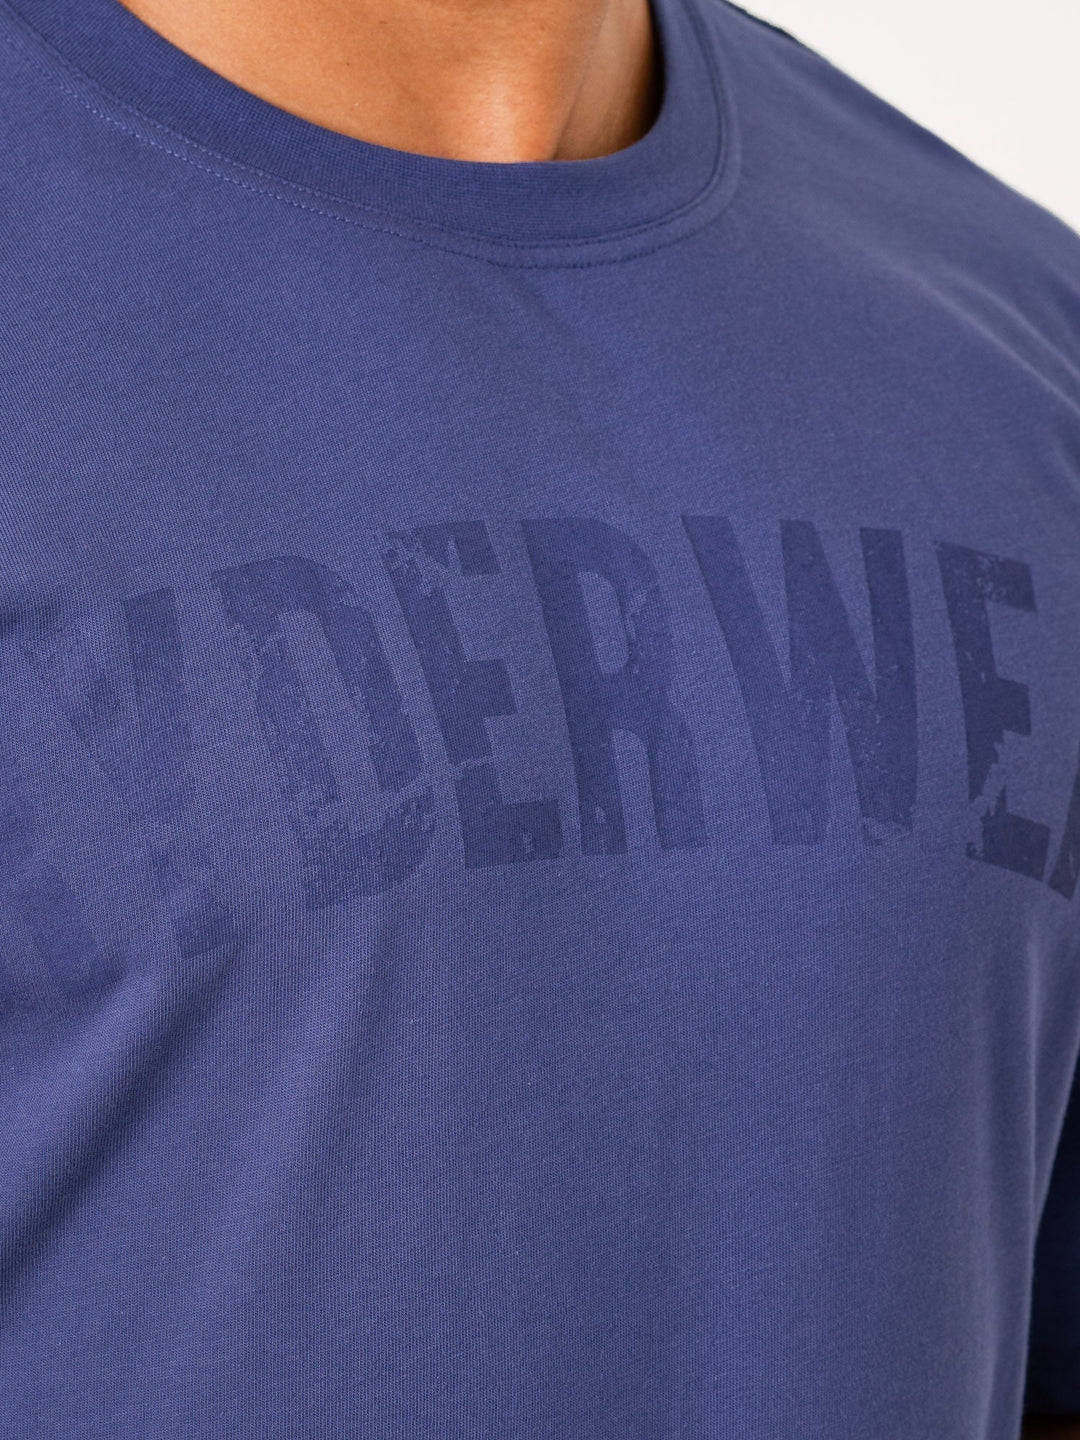 Force Oversized T-Shirt - Indigo Clothing Ryderwear 